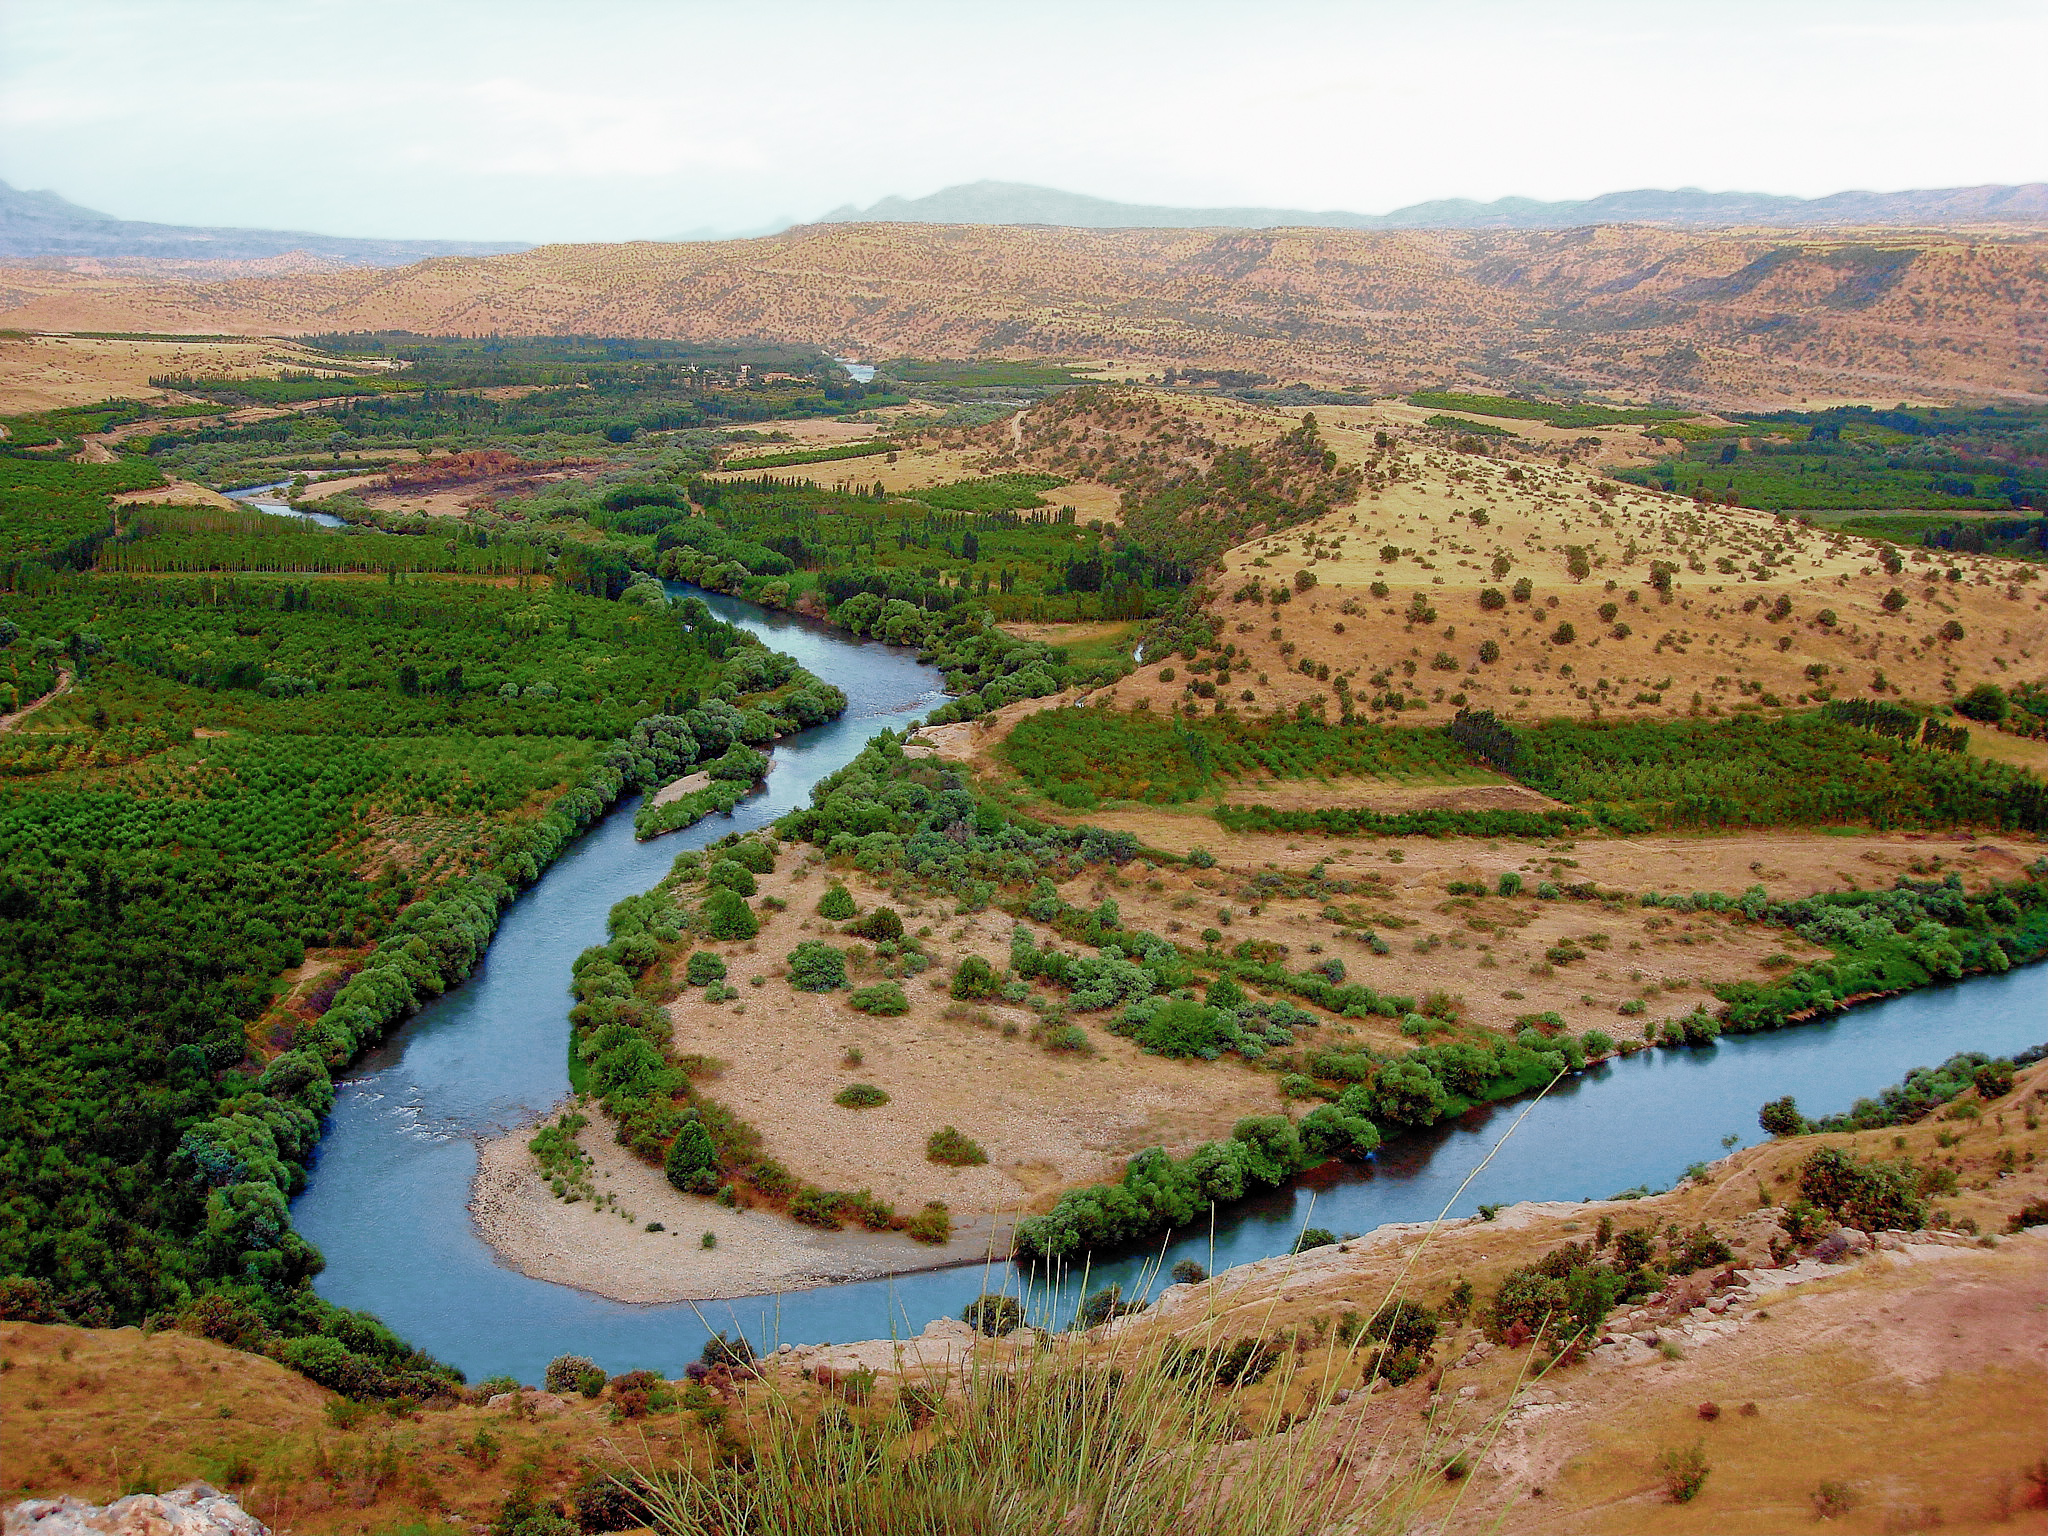 http://upload.wikimedia.org/wikipedia/commons/f/f5/Greater_Zab_River_near_Erbil_Iraqi_Kurdistan.jpg